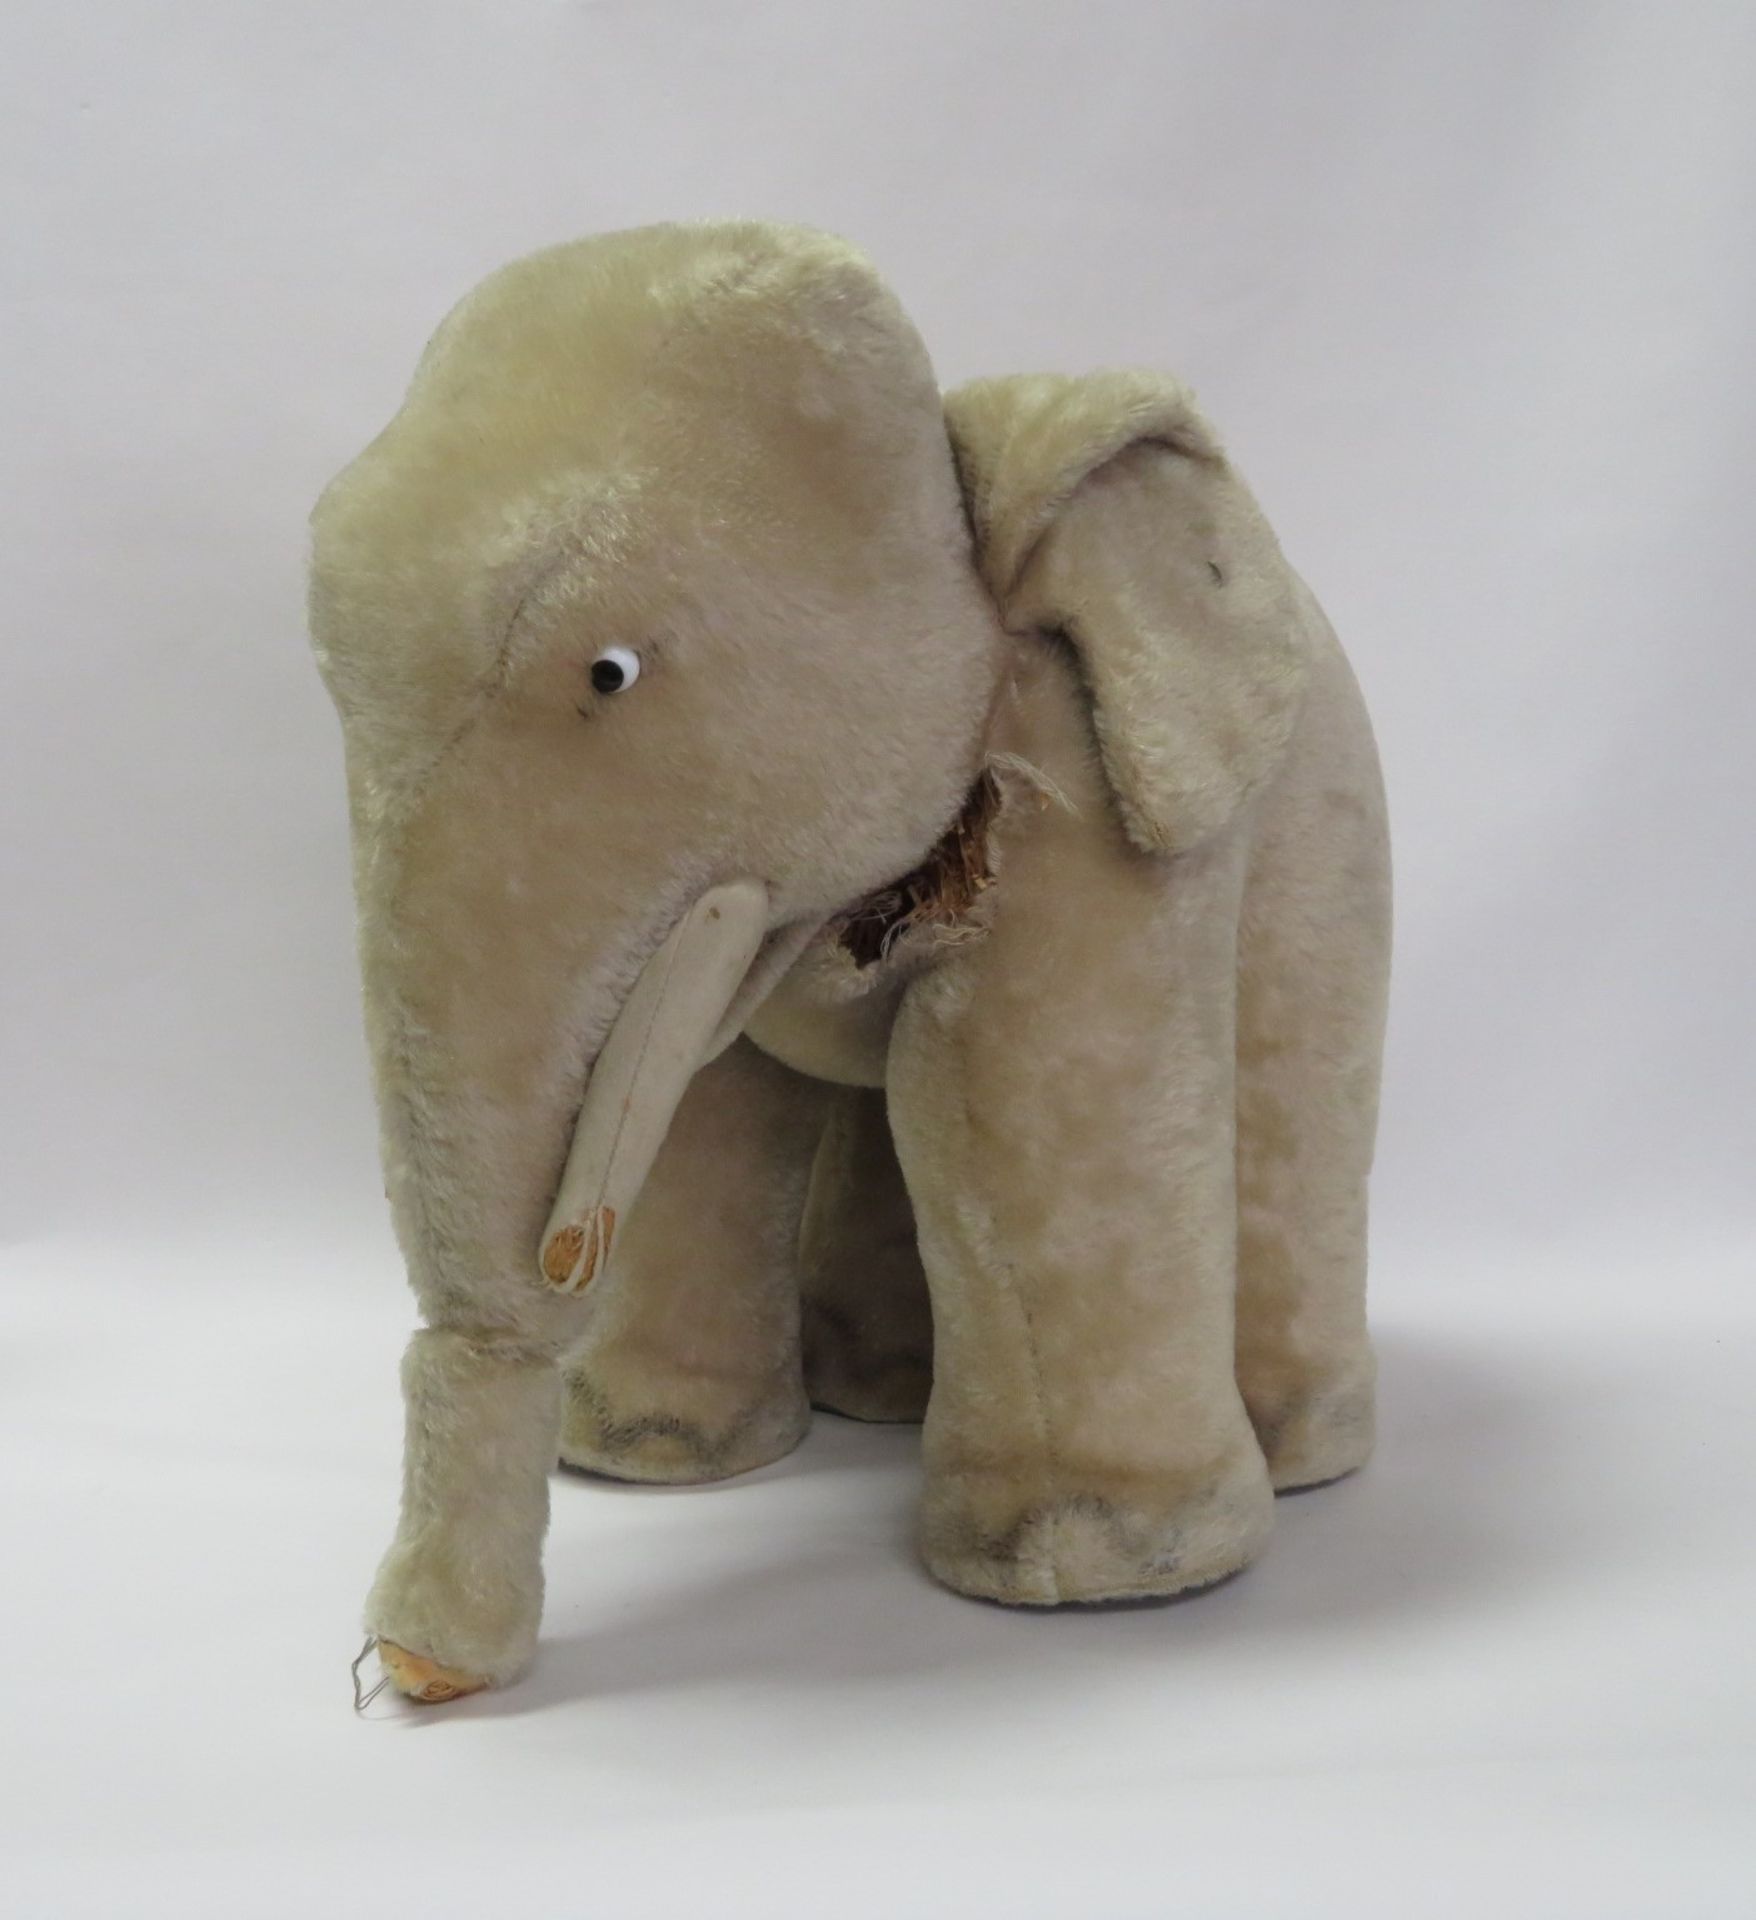 Elefant, Steiff, Knopf im Ohr, Hals mit Riss, Zähne und Rüssel abgerieben, 34 x